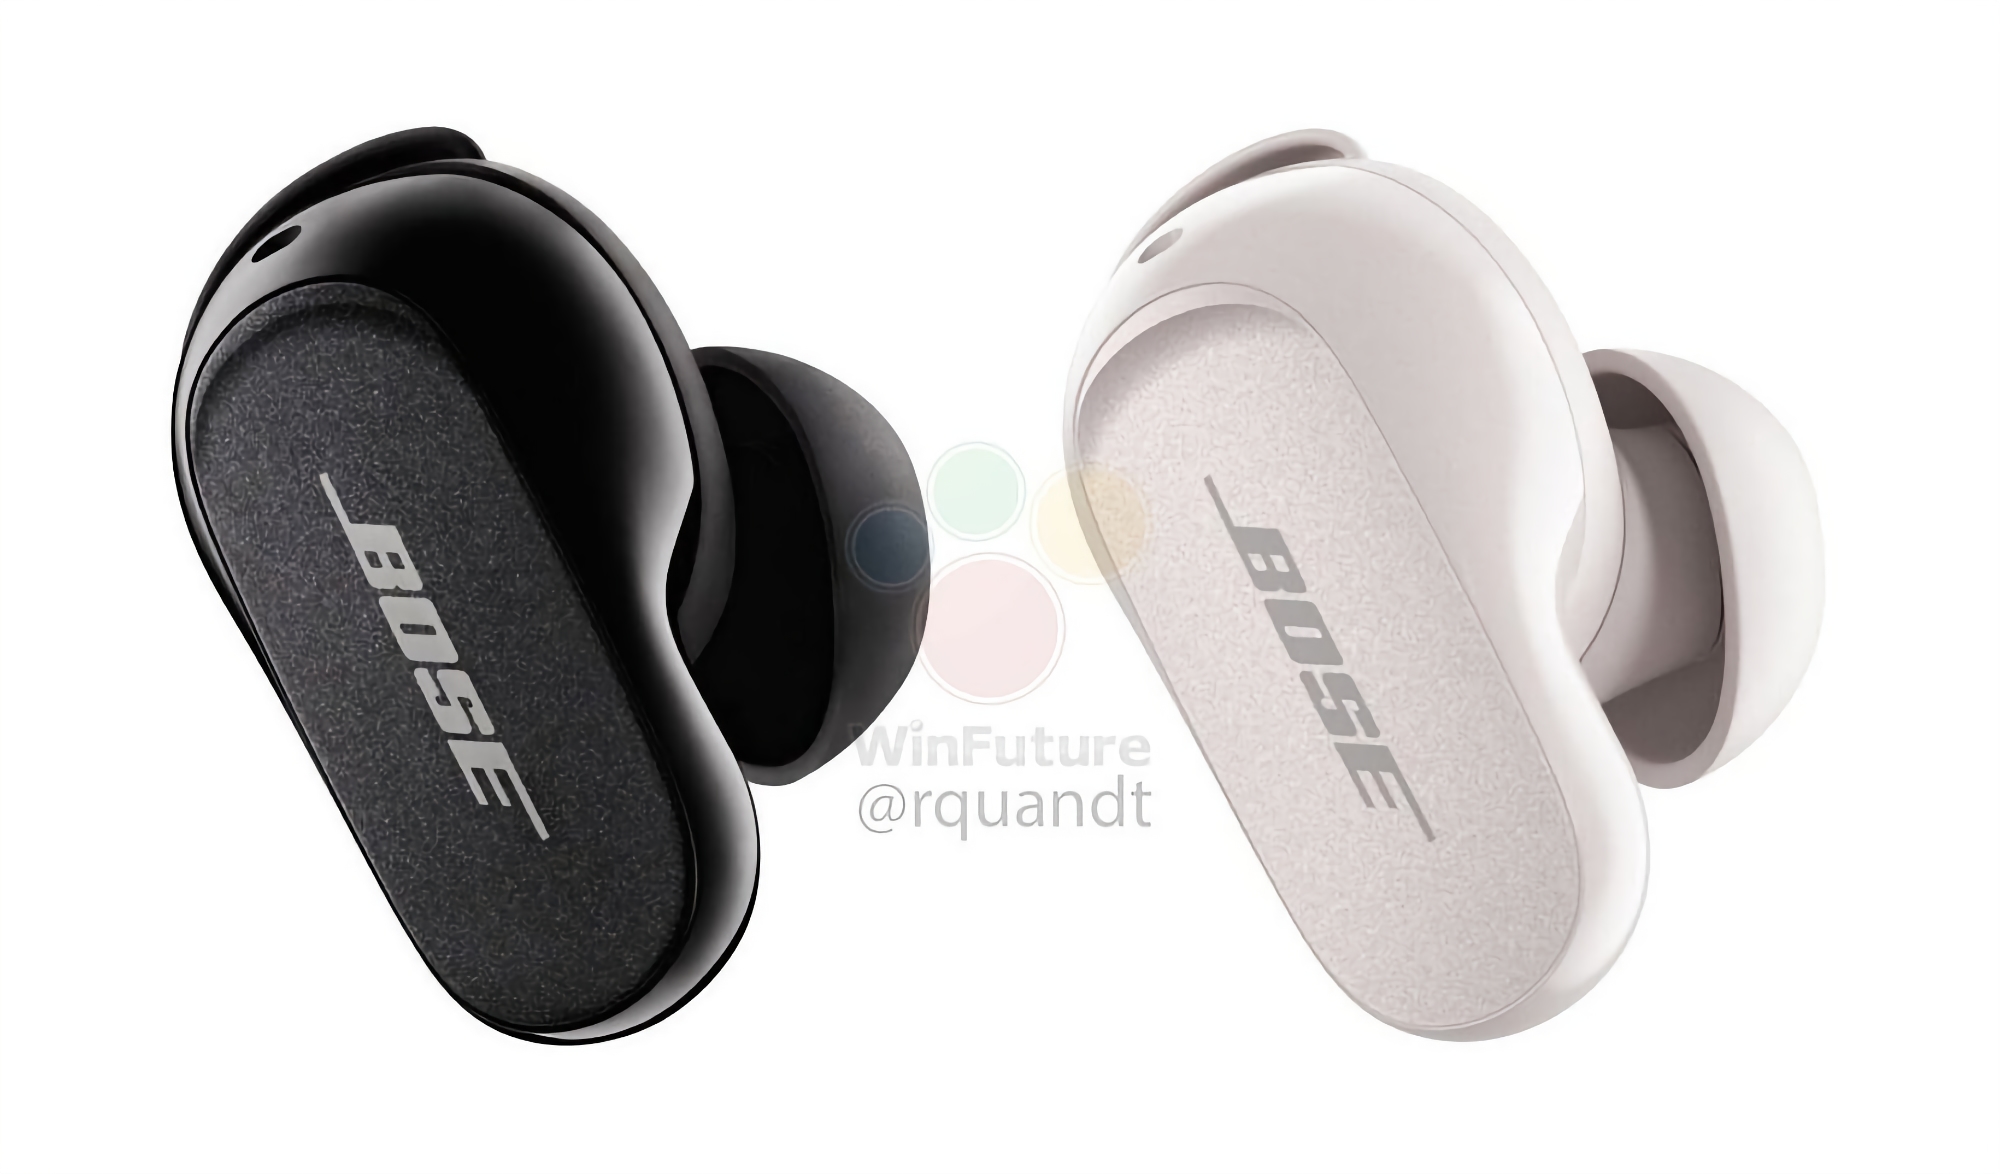 Bose annuncia le cuffie QuietComfort Earbuds II TWS con un nuovo design, ANC e un prezzo di $ 299